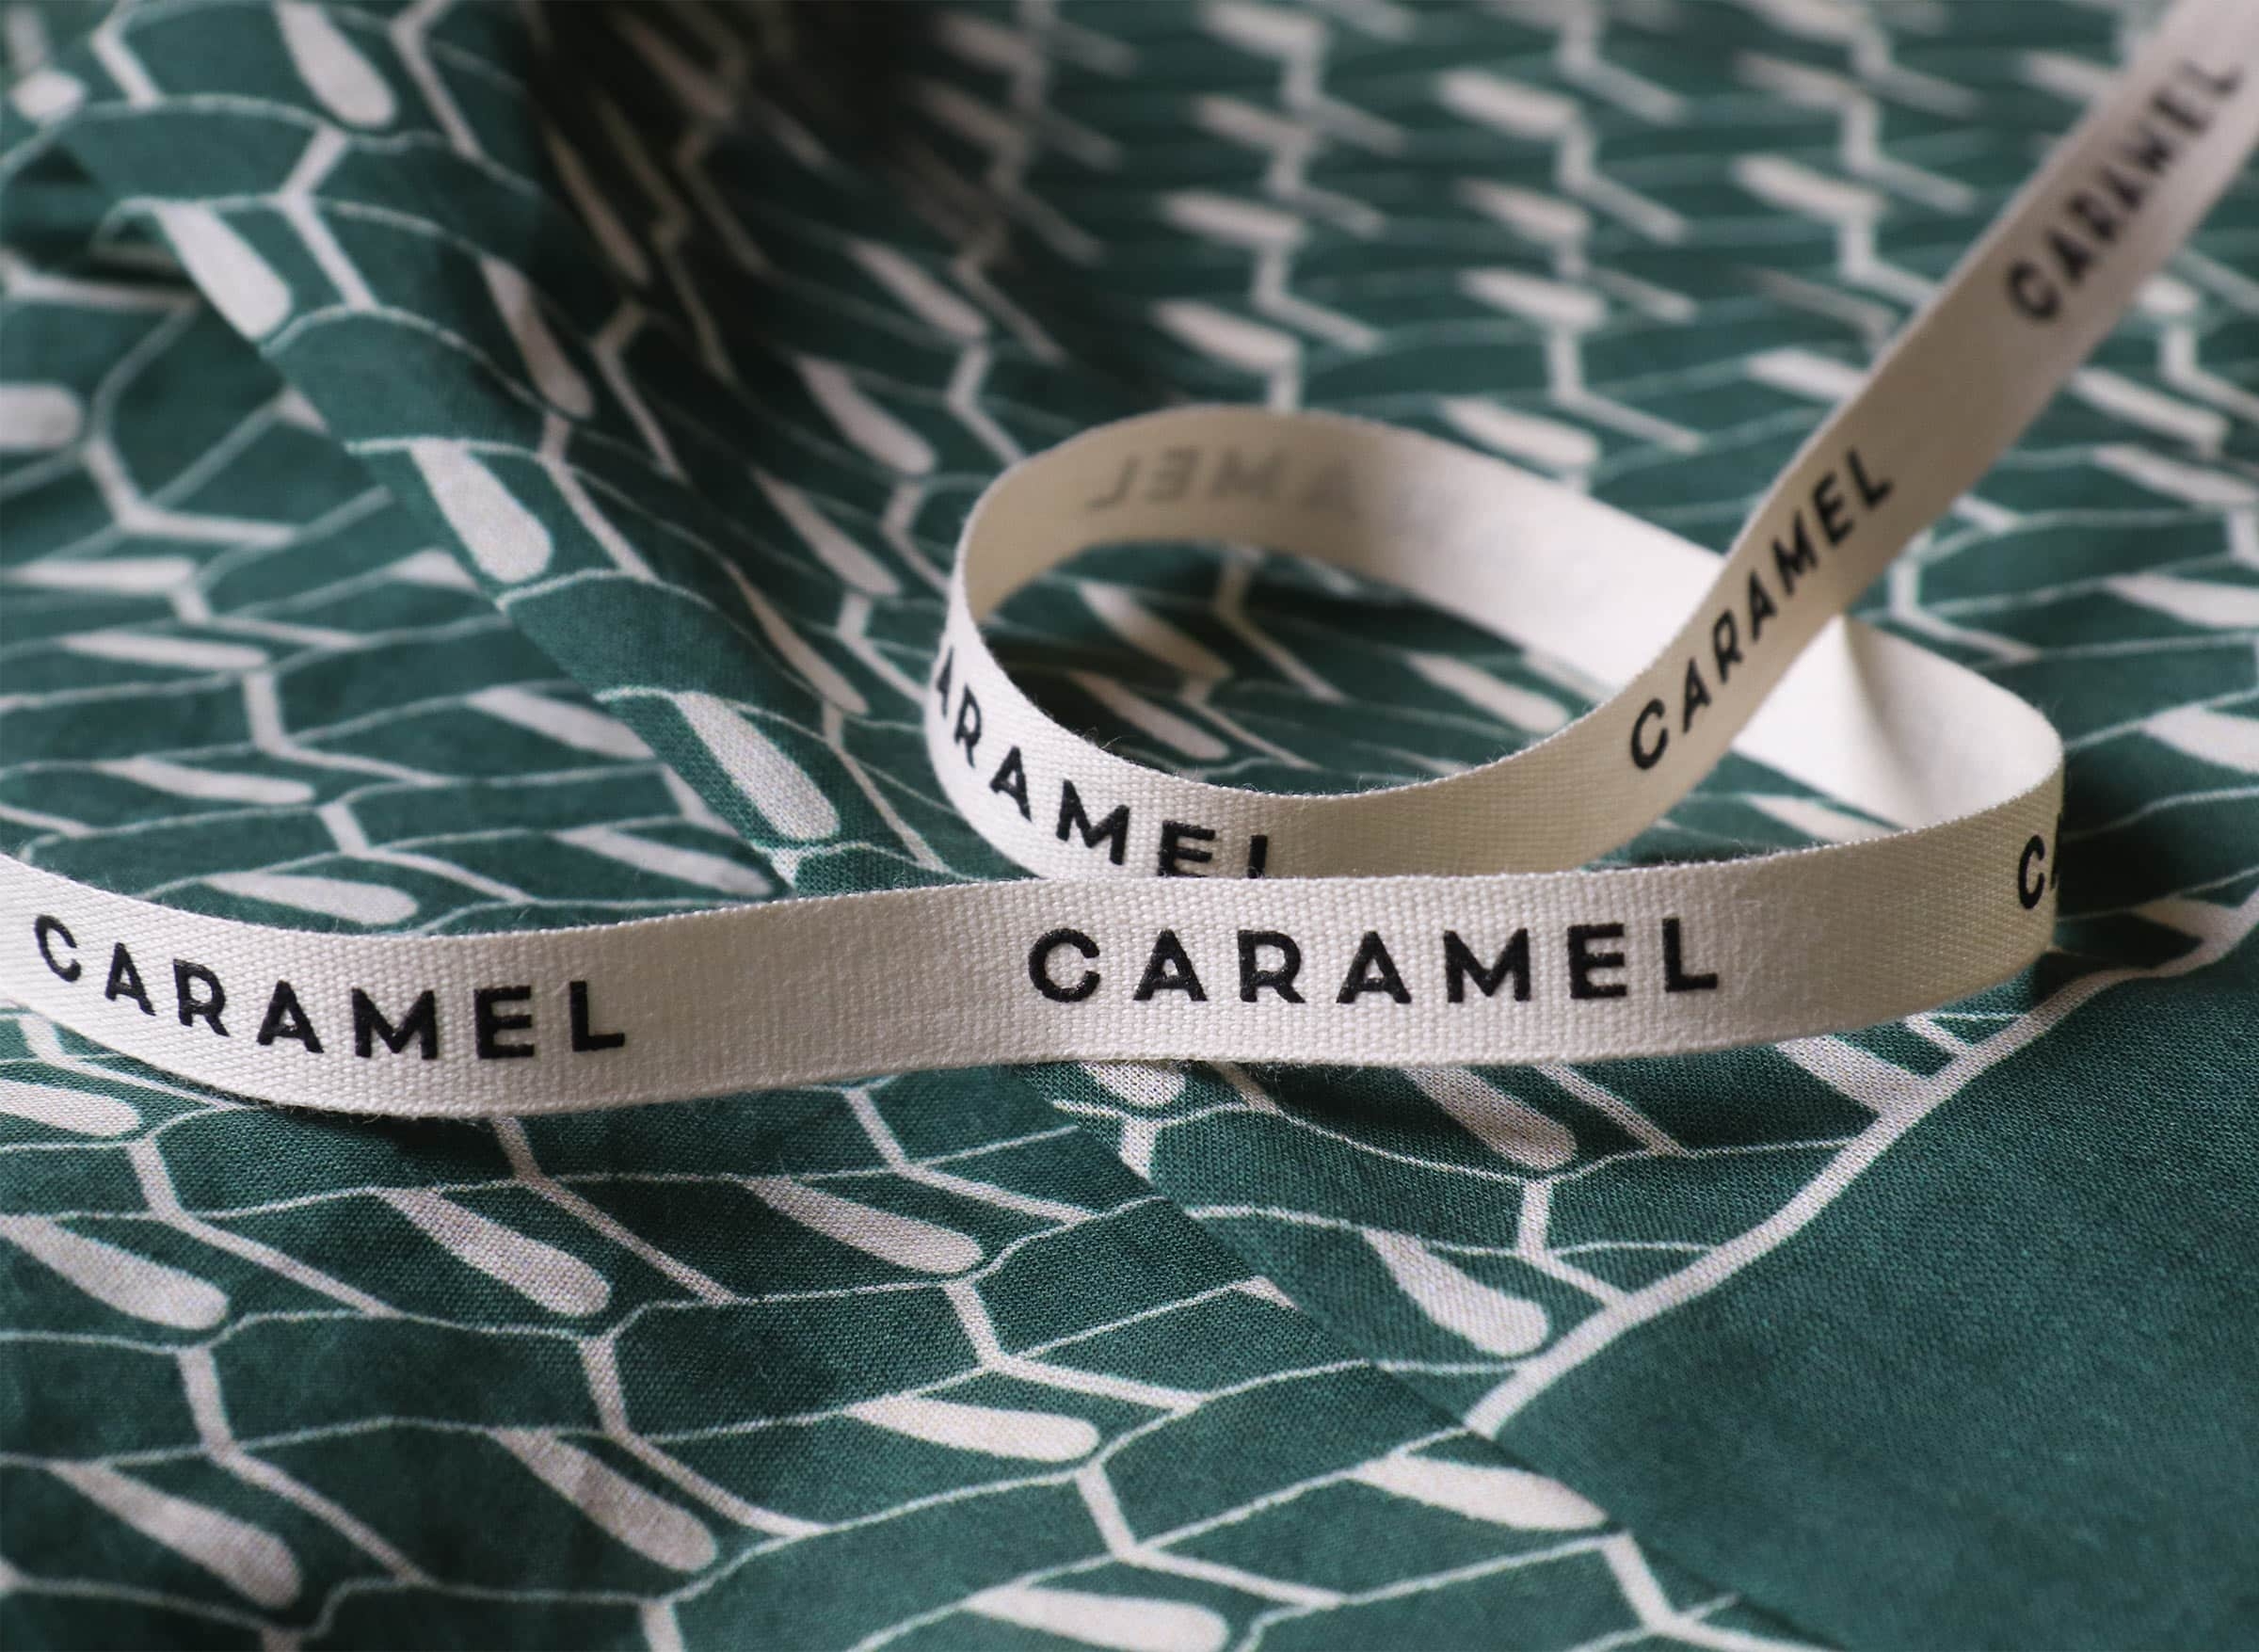 Caramel - StudioSmall